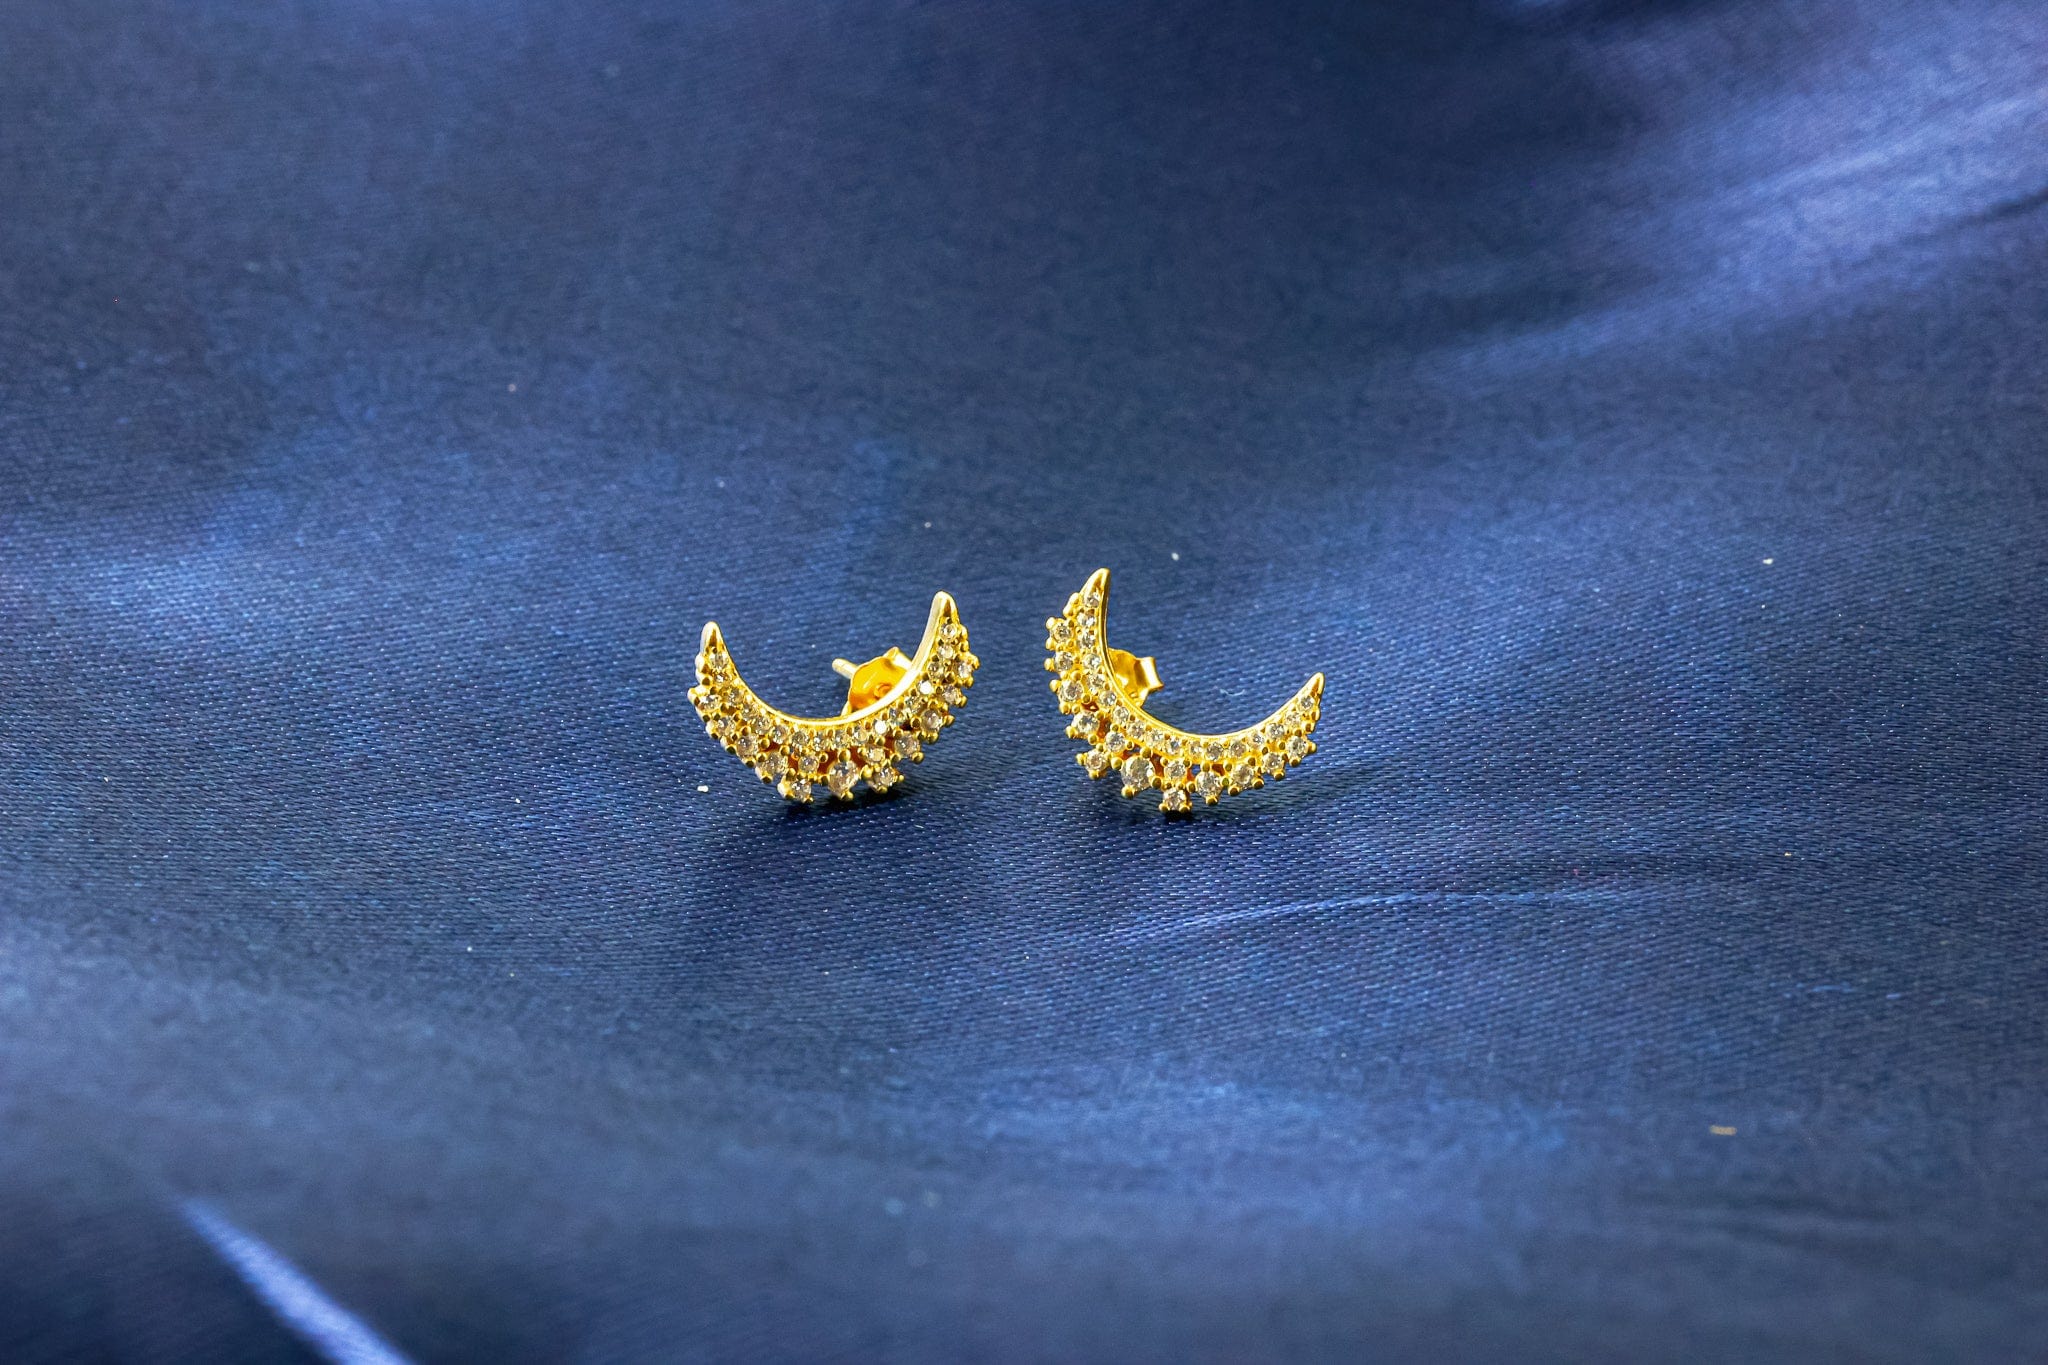 https://dreamridgejewelry.com/cdn/shop/products/dream-ridge-jewelry-earrings-luna-crystal-crescent-moon-stud-earrings-38049139359960.jpg?v=1680379349